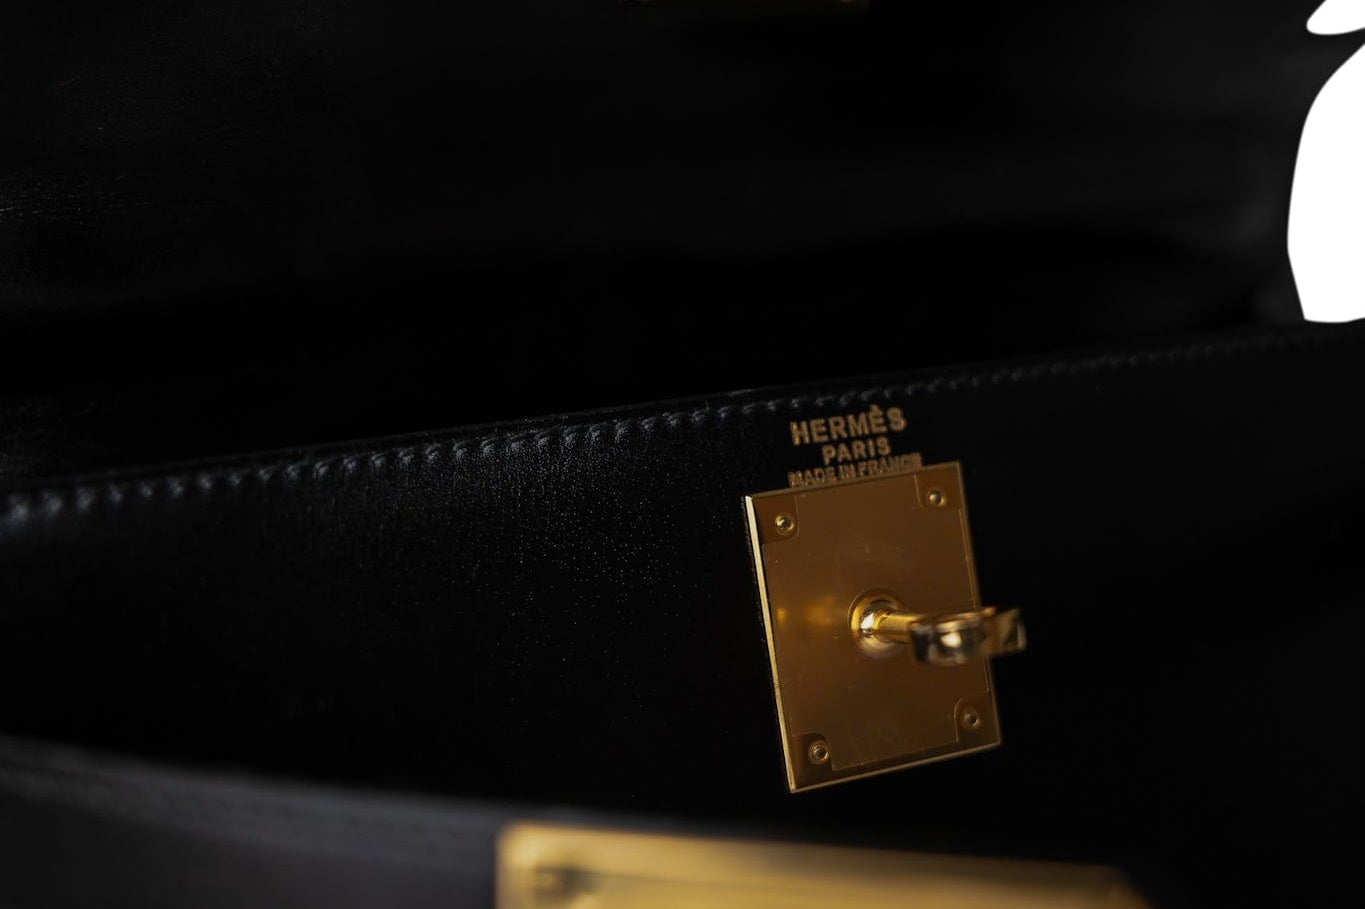 Hermes Handbag Black Kelly Sellier 28 Black Box Calfskin Gold Plated (V) Stamp - Redeluxe